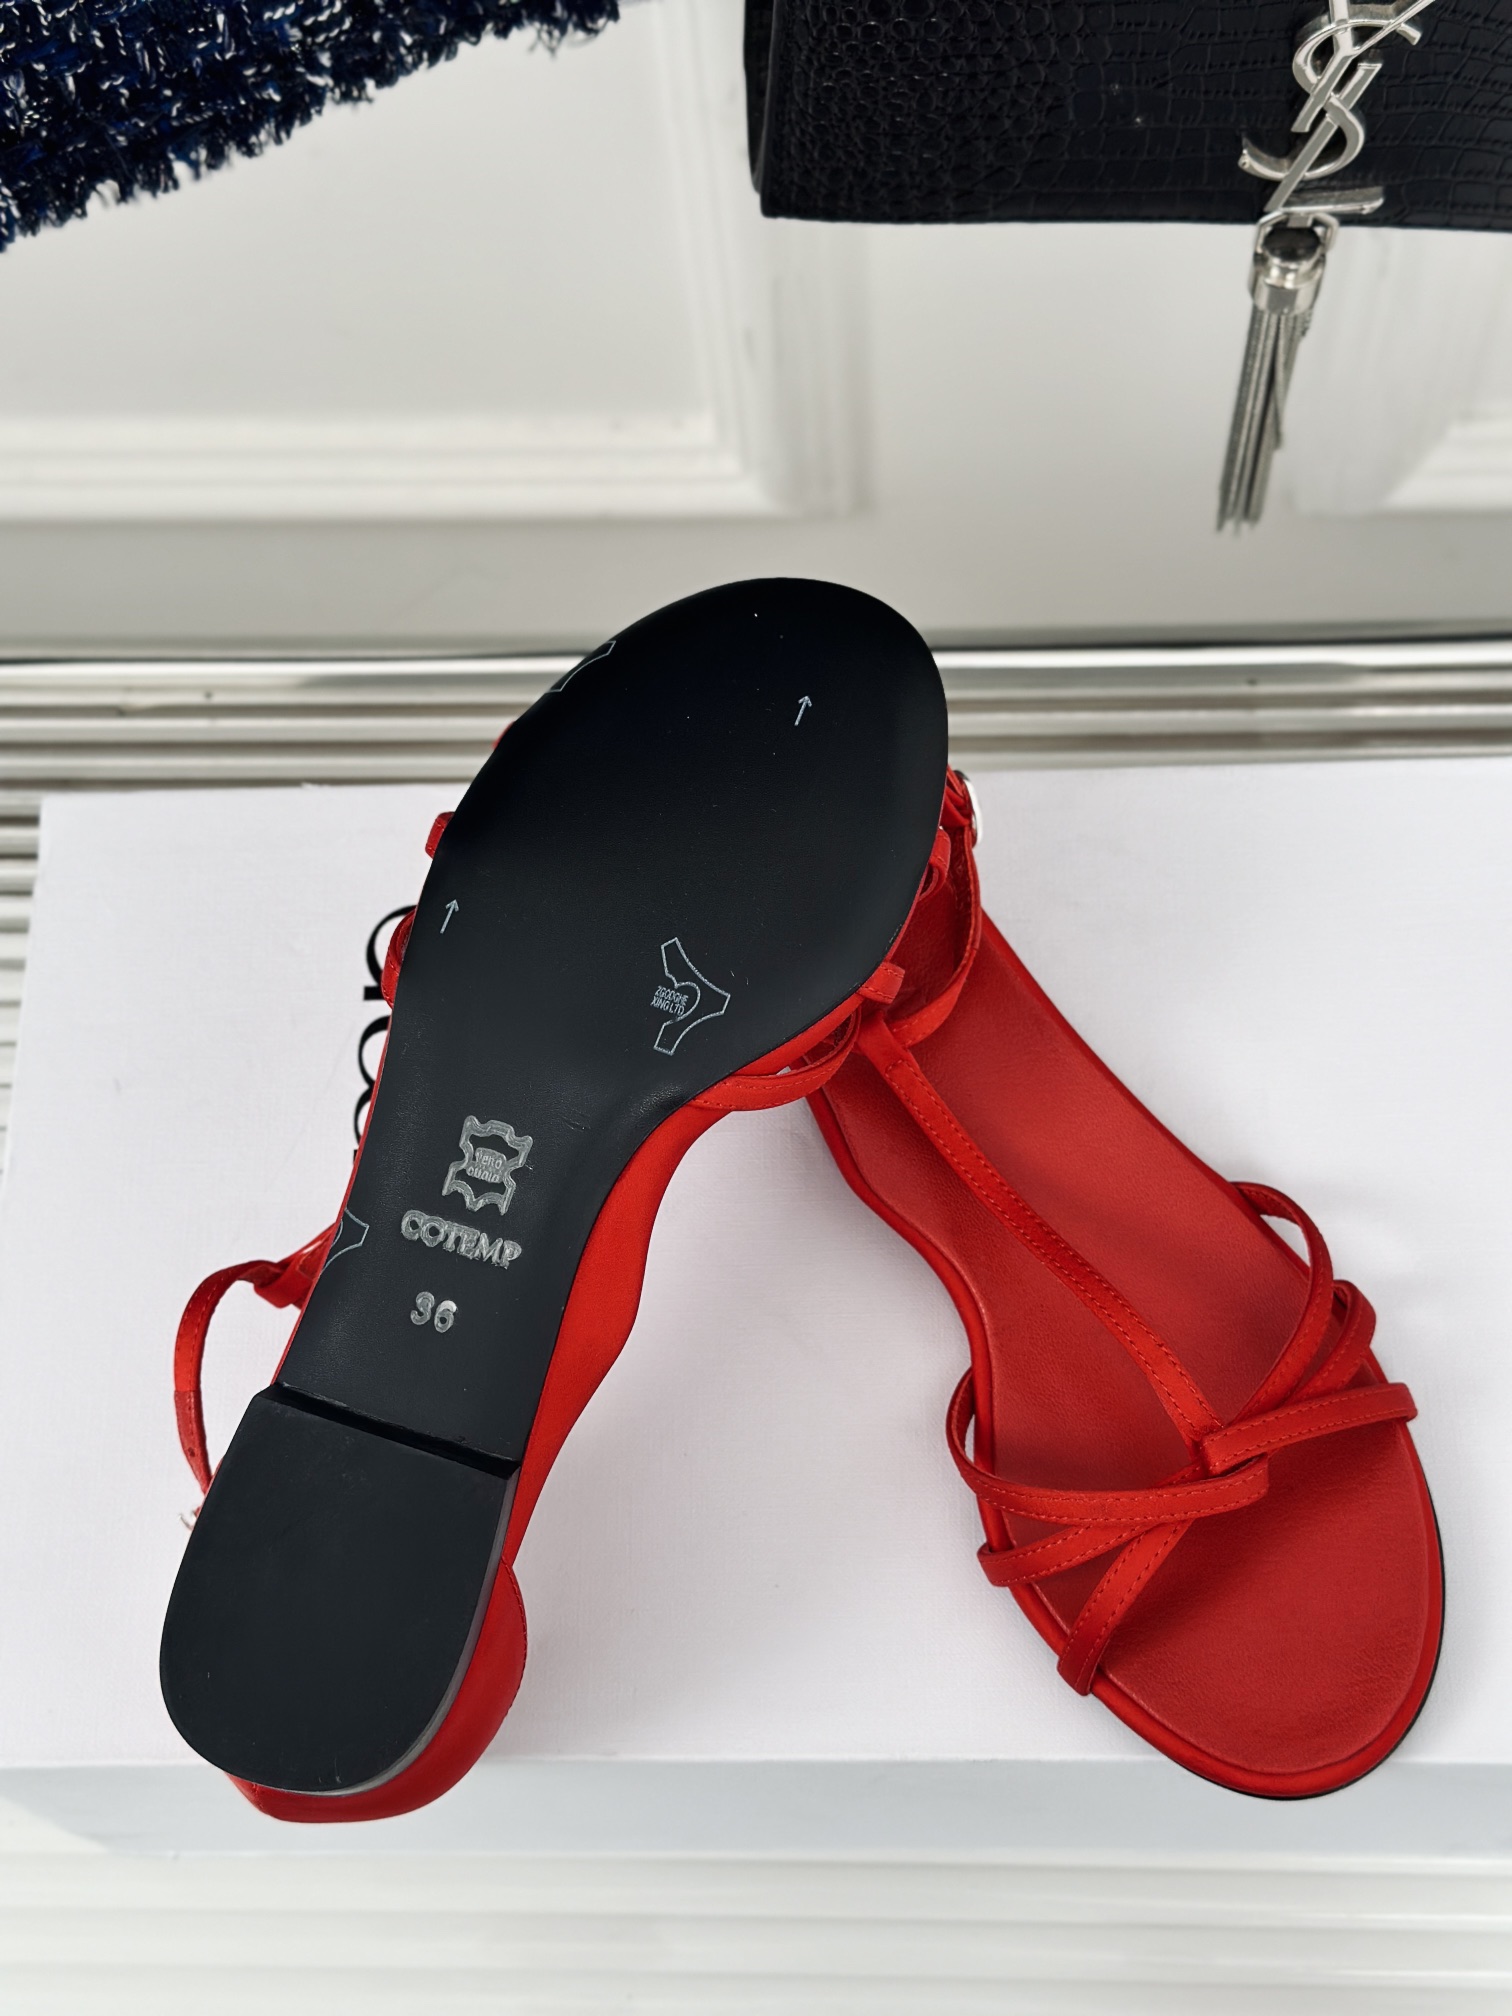 Cotemp124S春夏新品高跟凉鞋系列网红最爱款也是搭配利器鞋面采用进口小牛皮内里垫脚均为进口羊皮意大